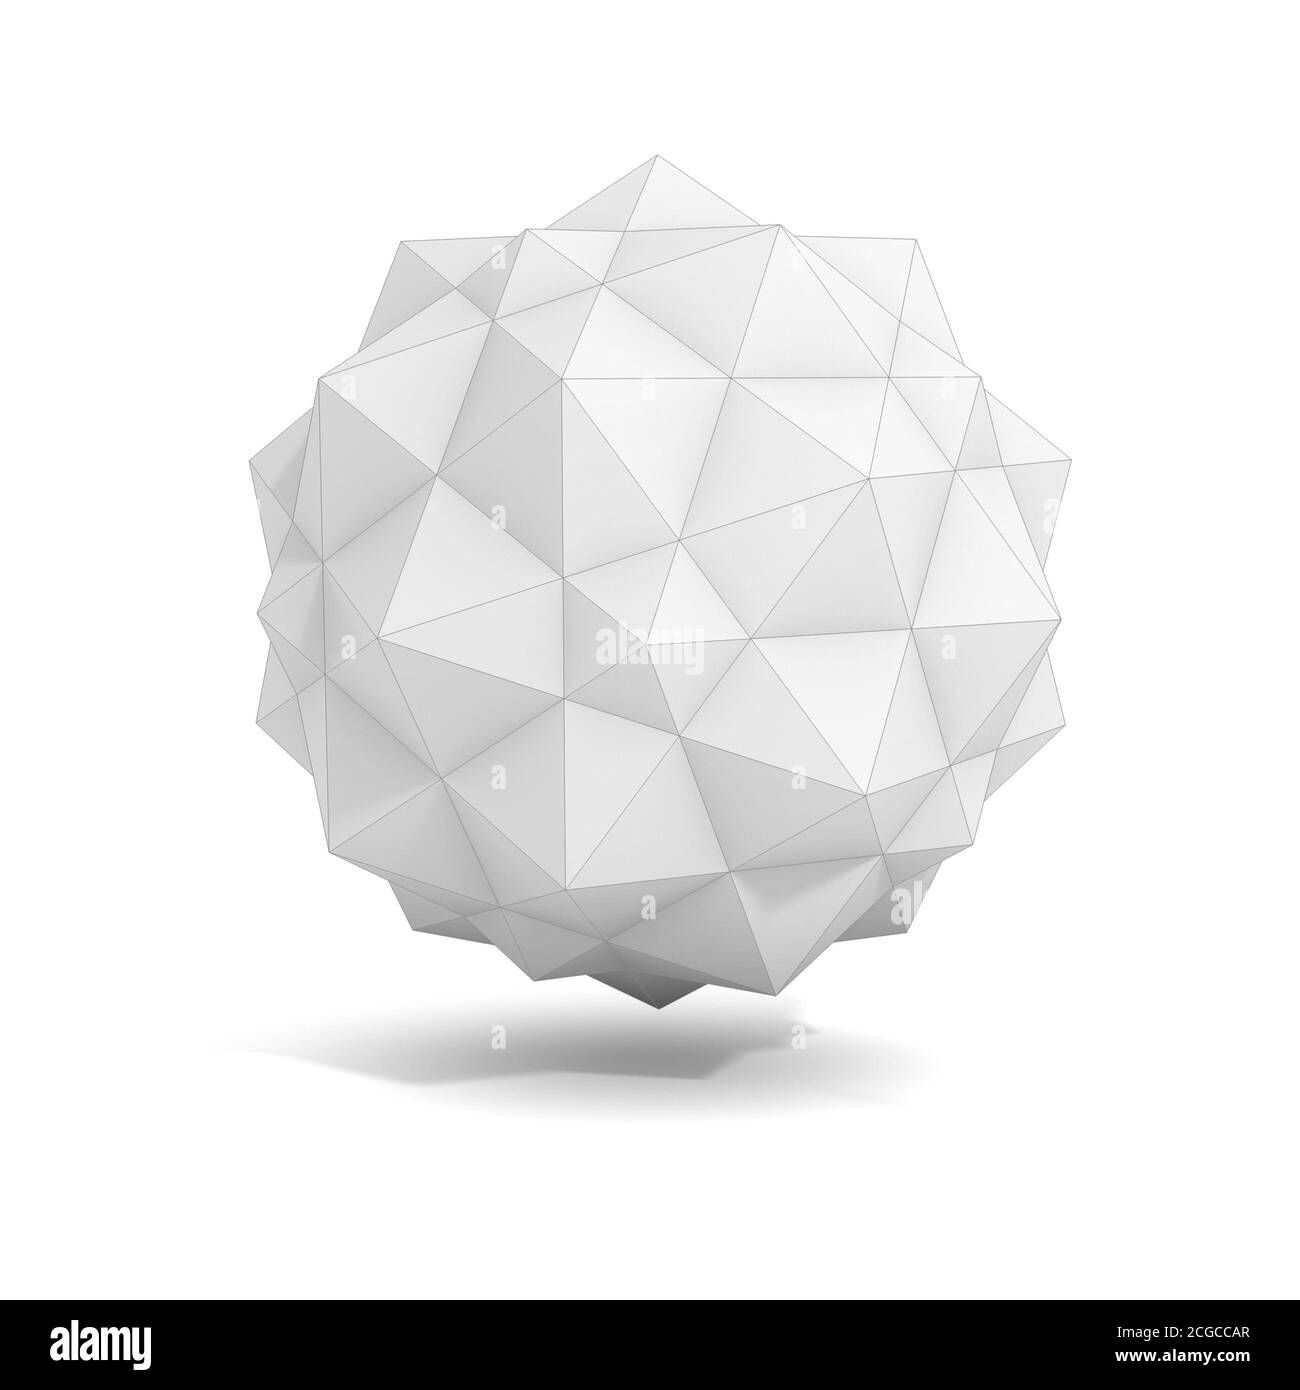 Tetrahedron Banque d'images noir et blanc - Page 3 - Alamy